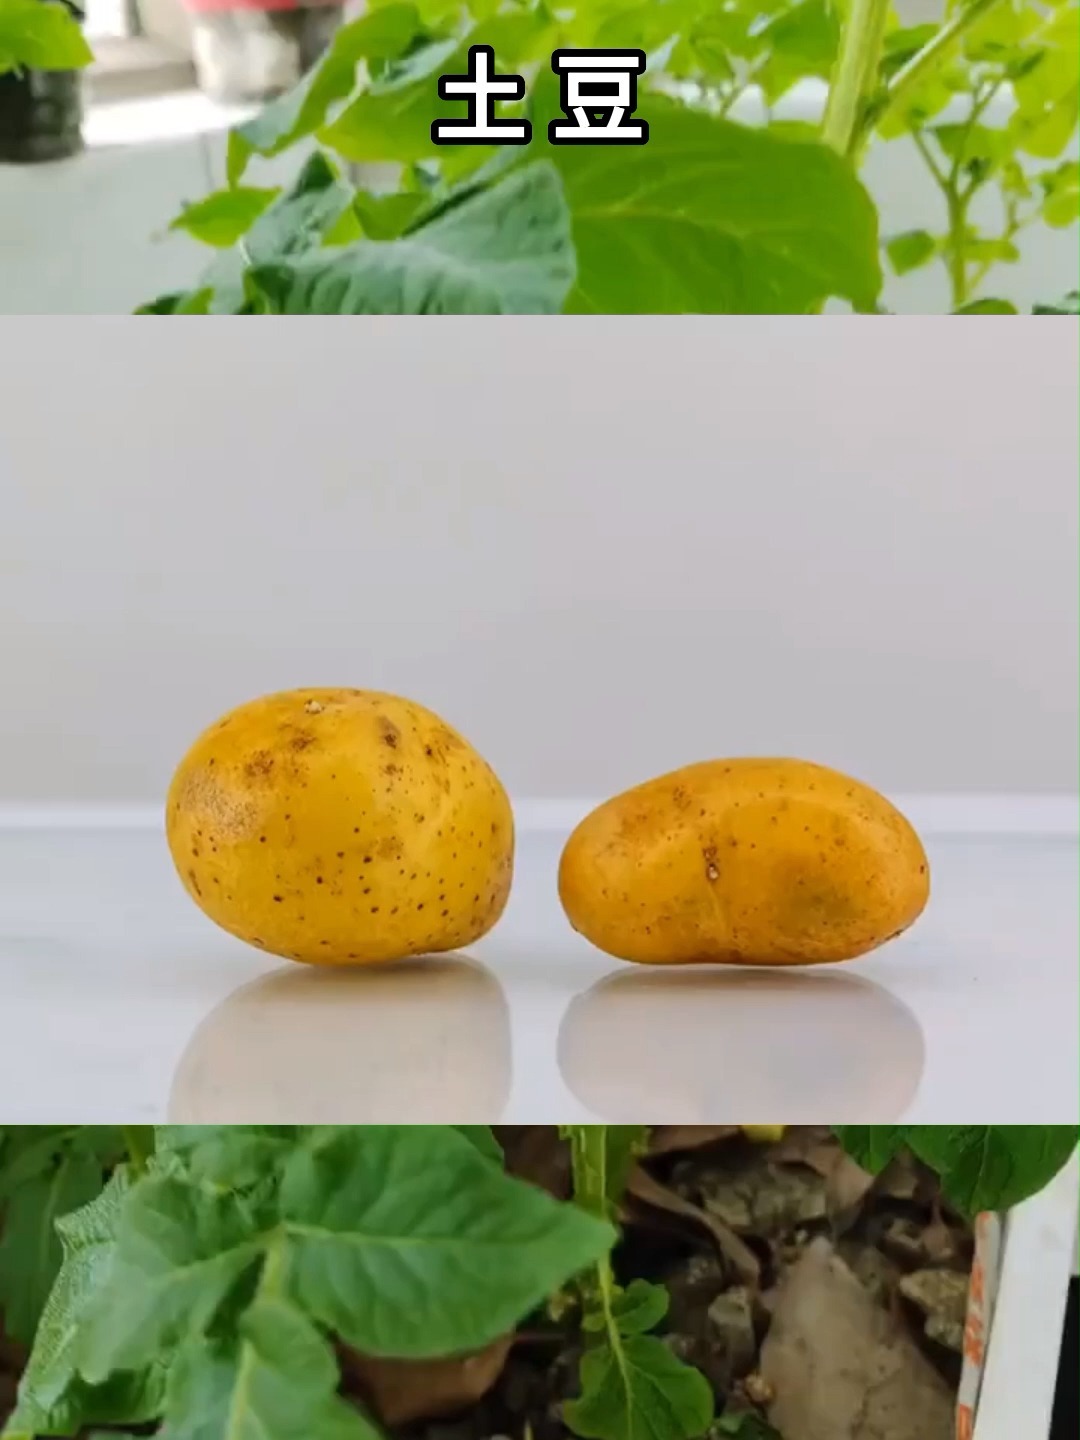 土豆植物生长周期 向量例证. 插画 包括有 副食品, 庄稼, 图画, 肿胀, 剪影, 新芽, 耕种, 绿色 - 72549751